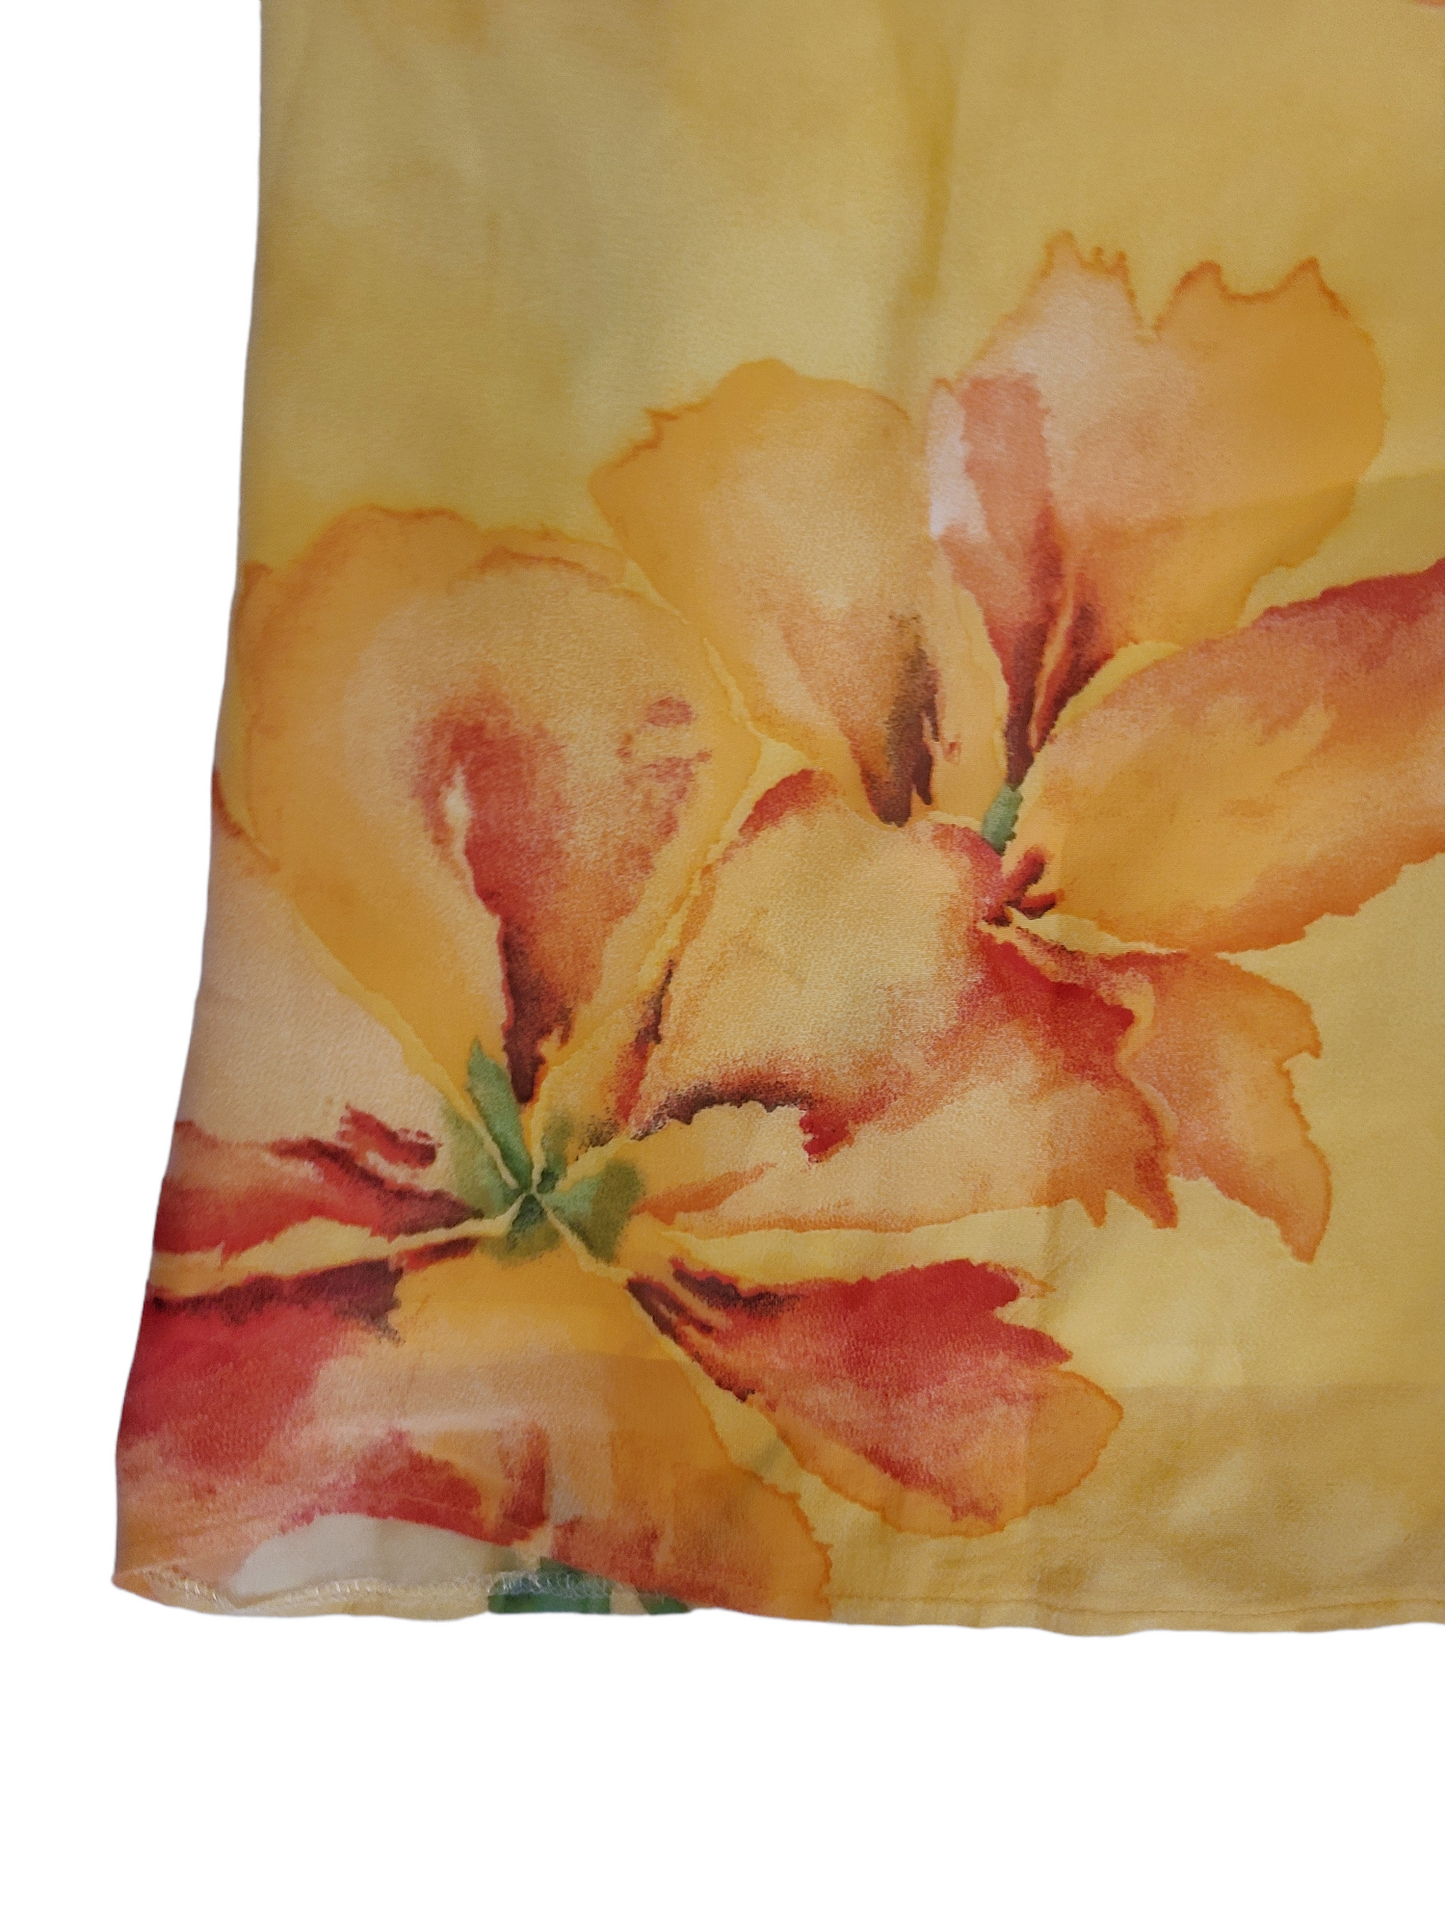 Vintage y2k flowers mesh skirt